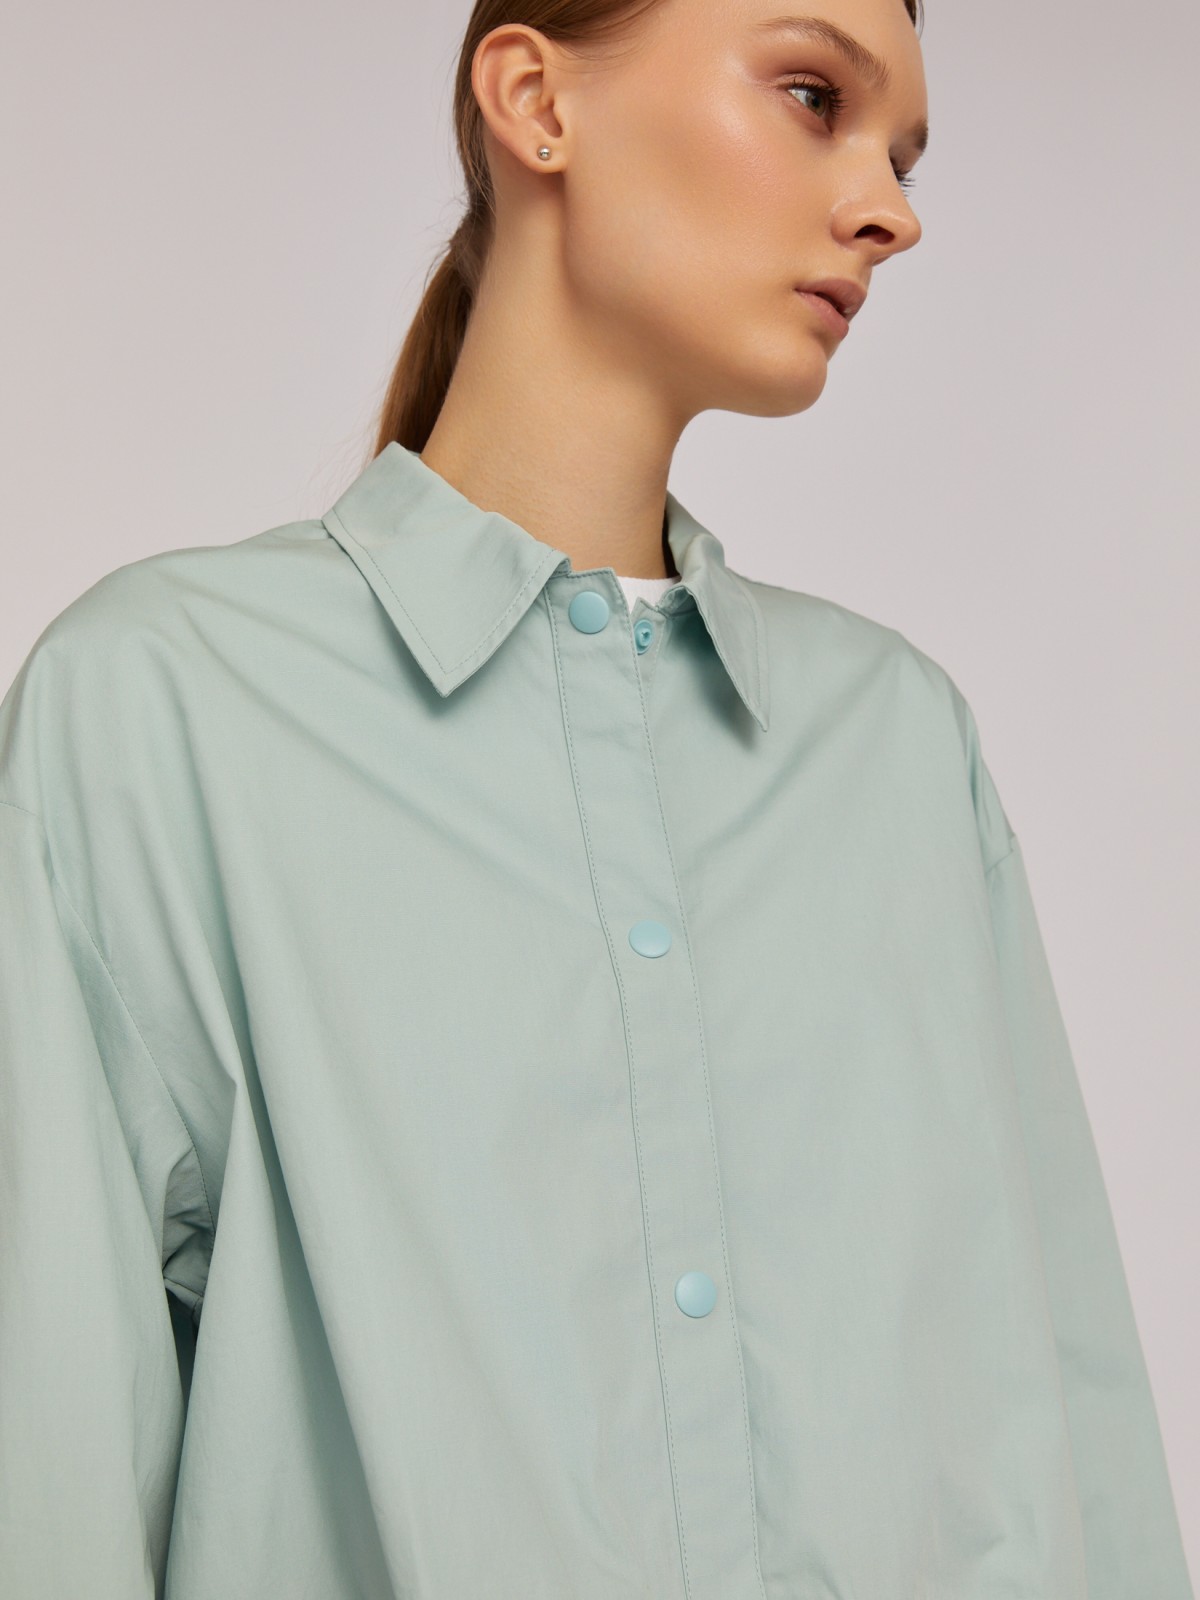 Укороченная блузка-рубашка из хлопка на кулиске zolla 02421114Y131, цвет мятный, размер XS - фото 4